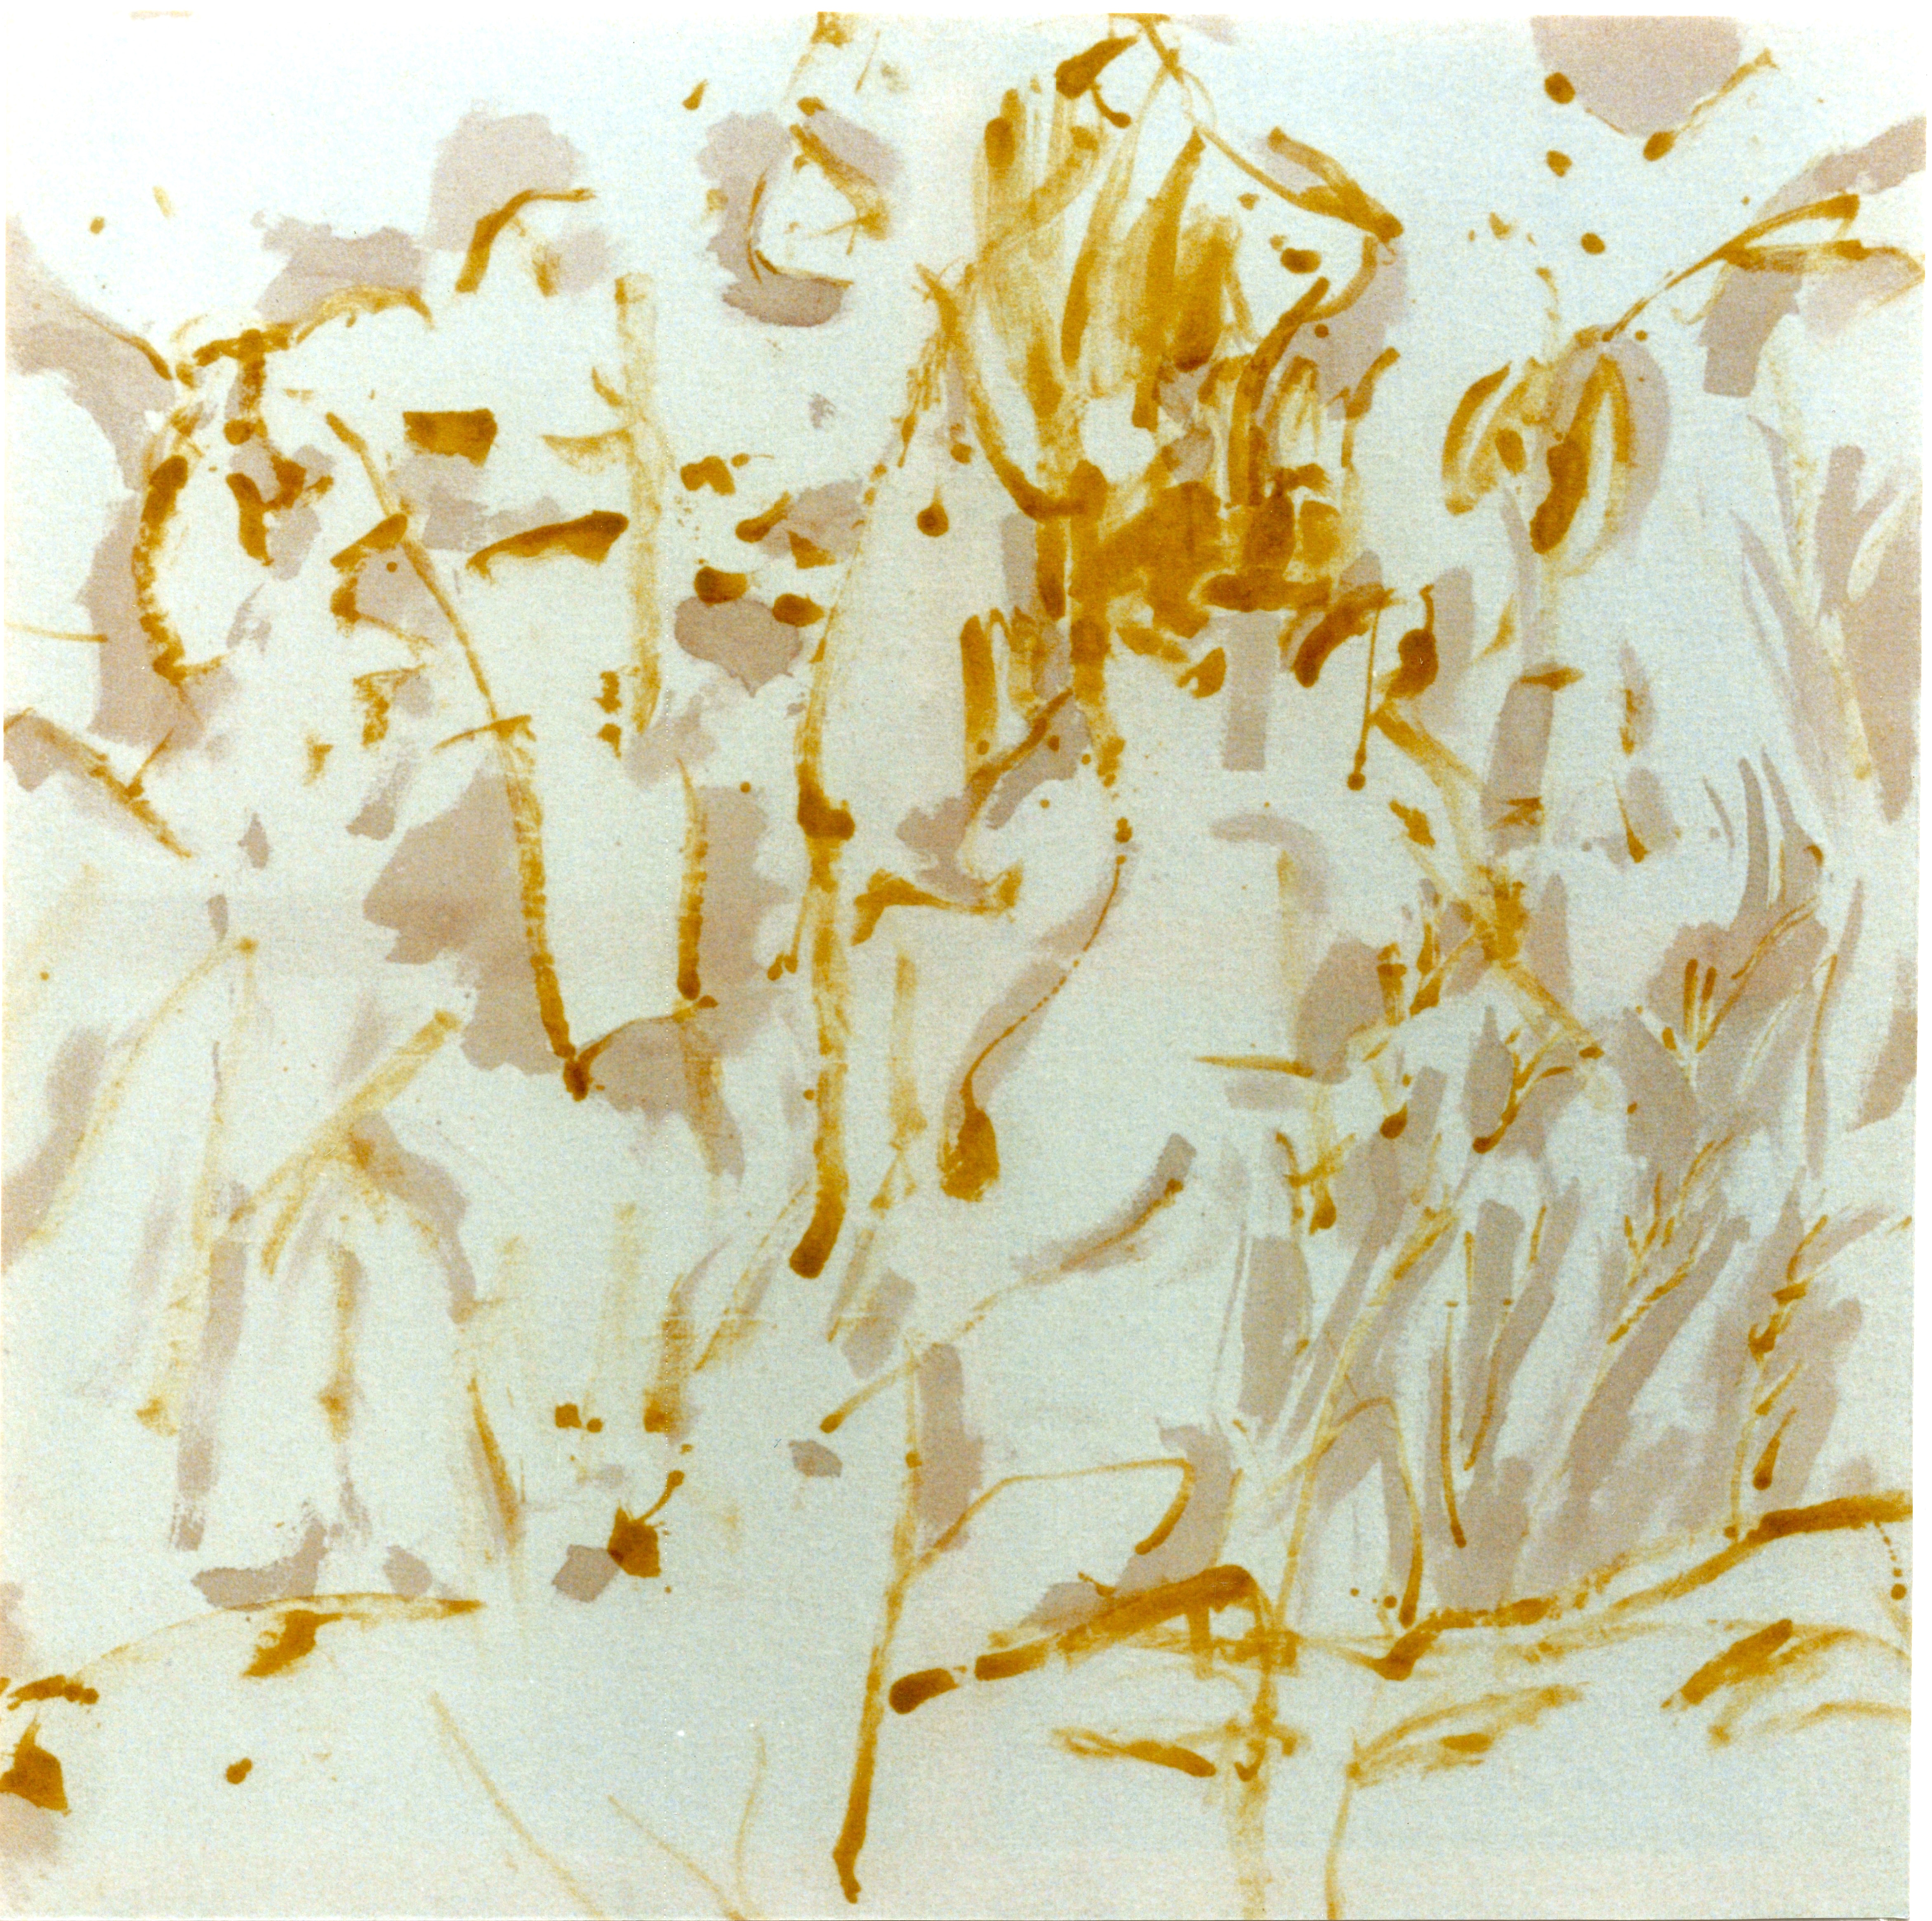 1991, Blé or Genève, huile et pigments sur toile de coton, 120 x 120 cm